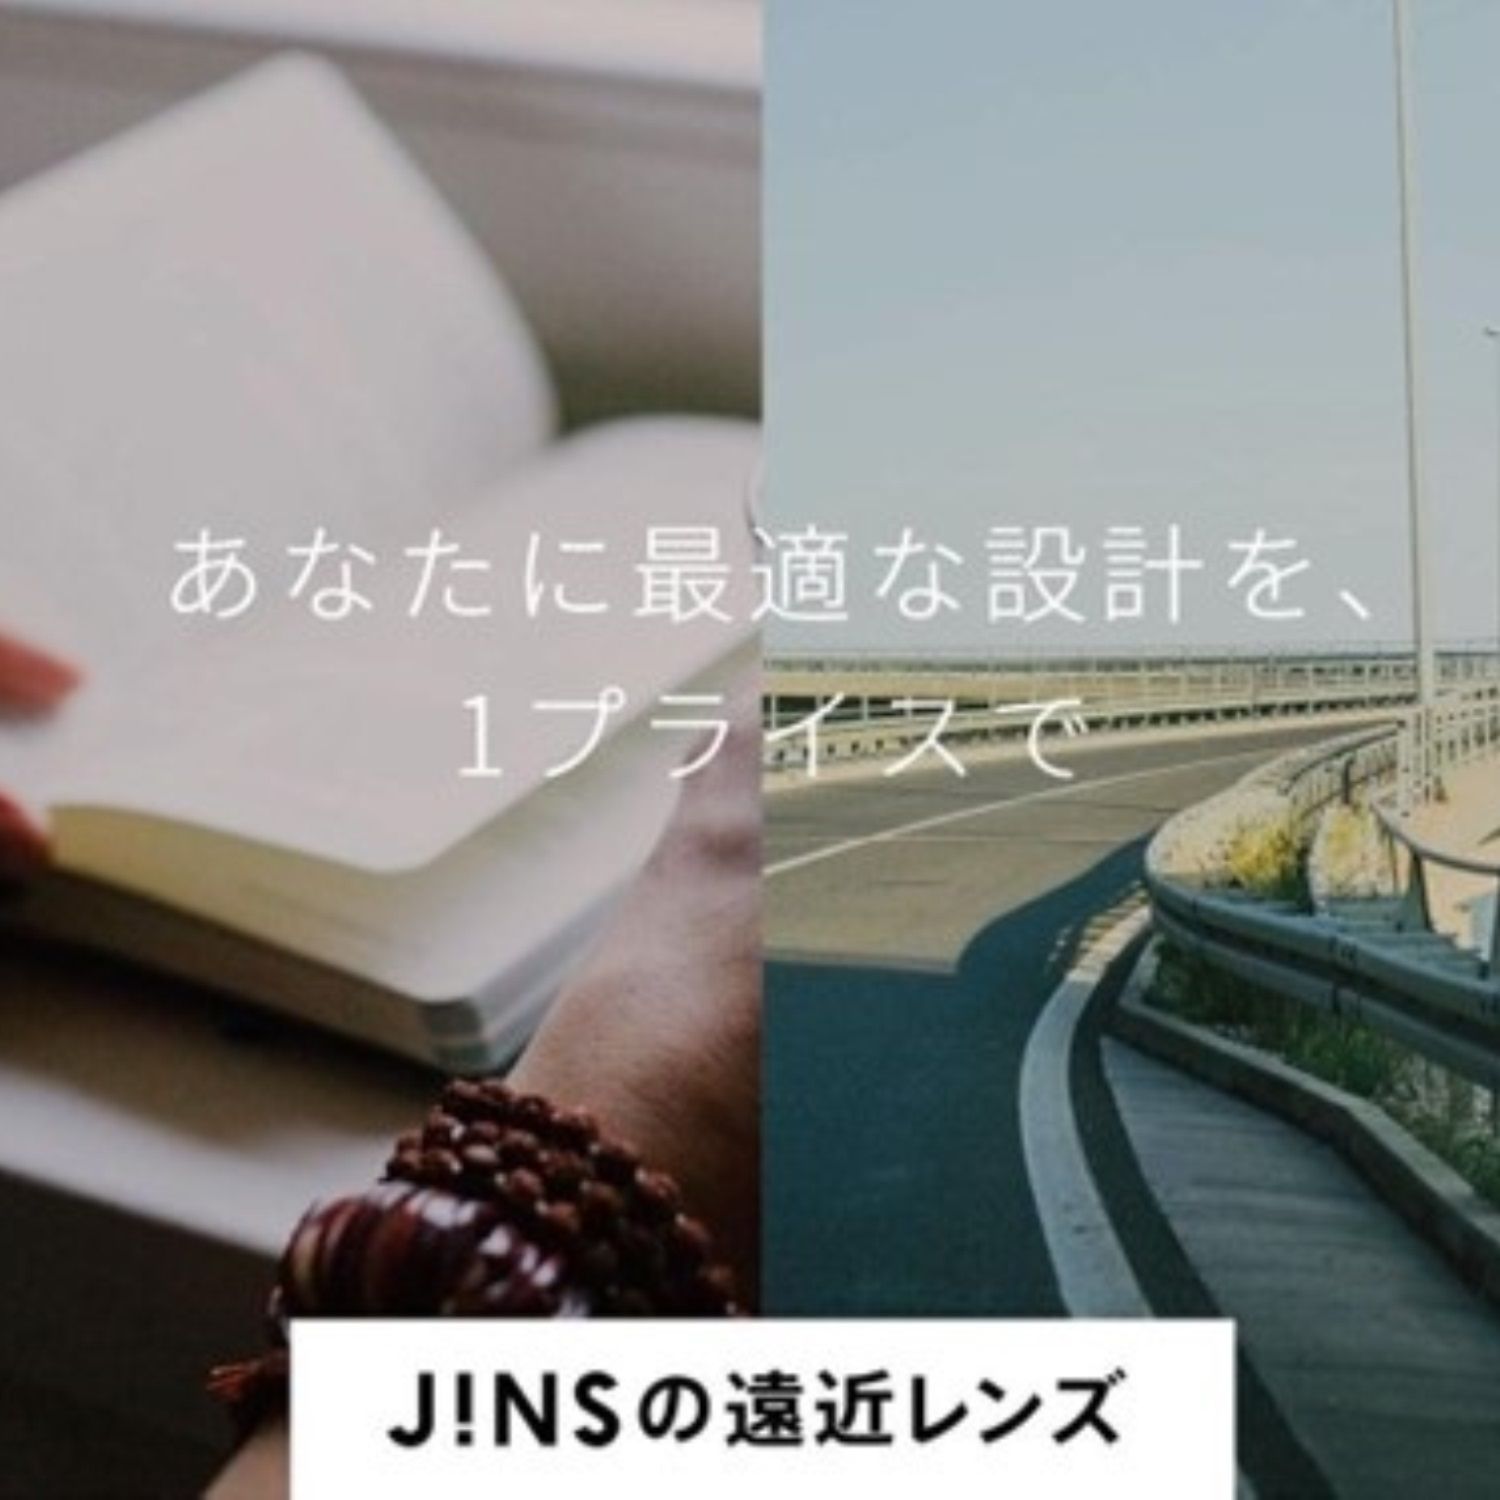 JINS_遠近素材_正方形.jpg